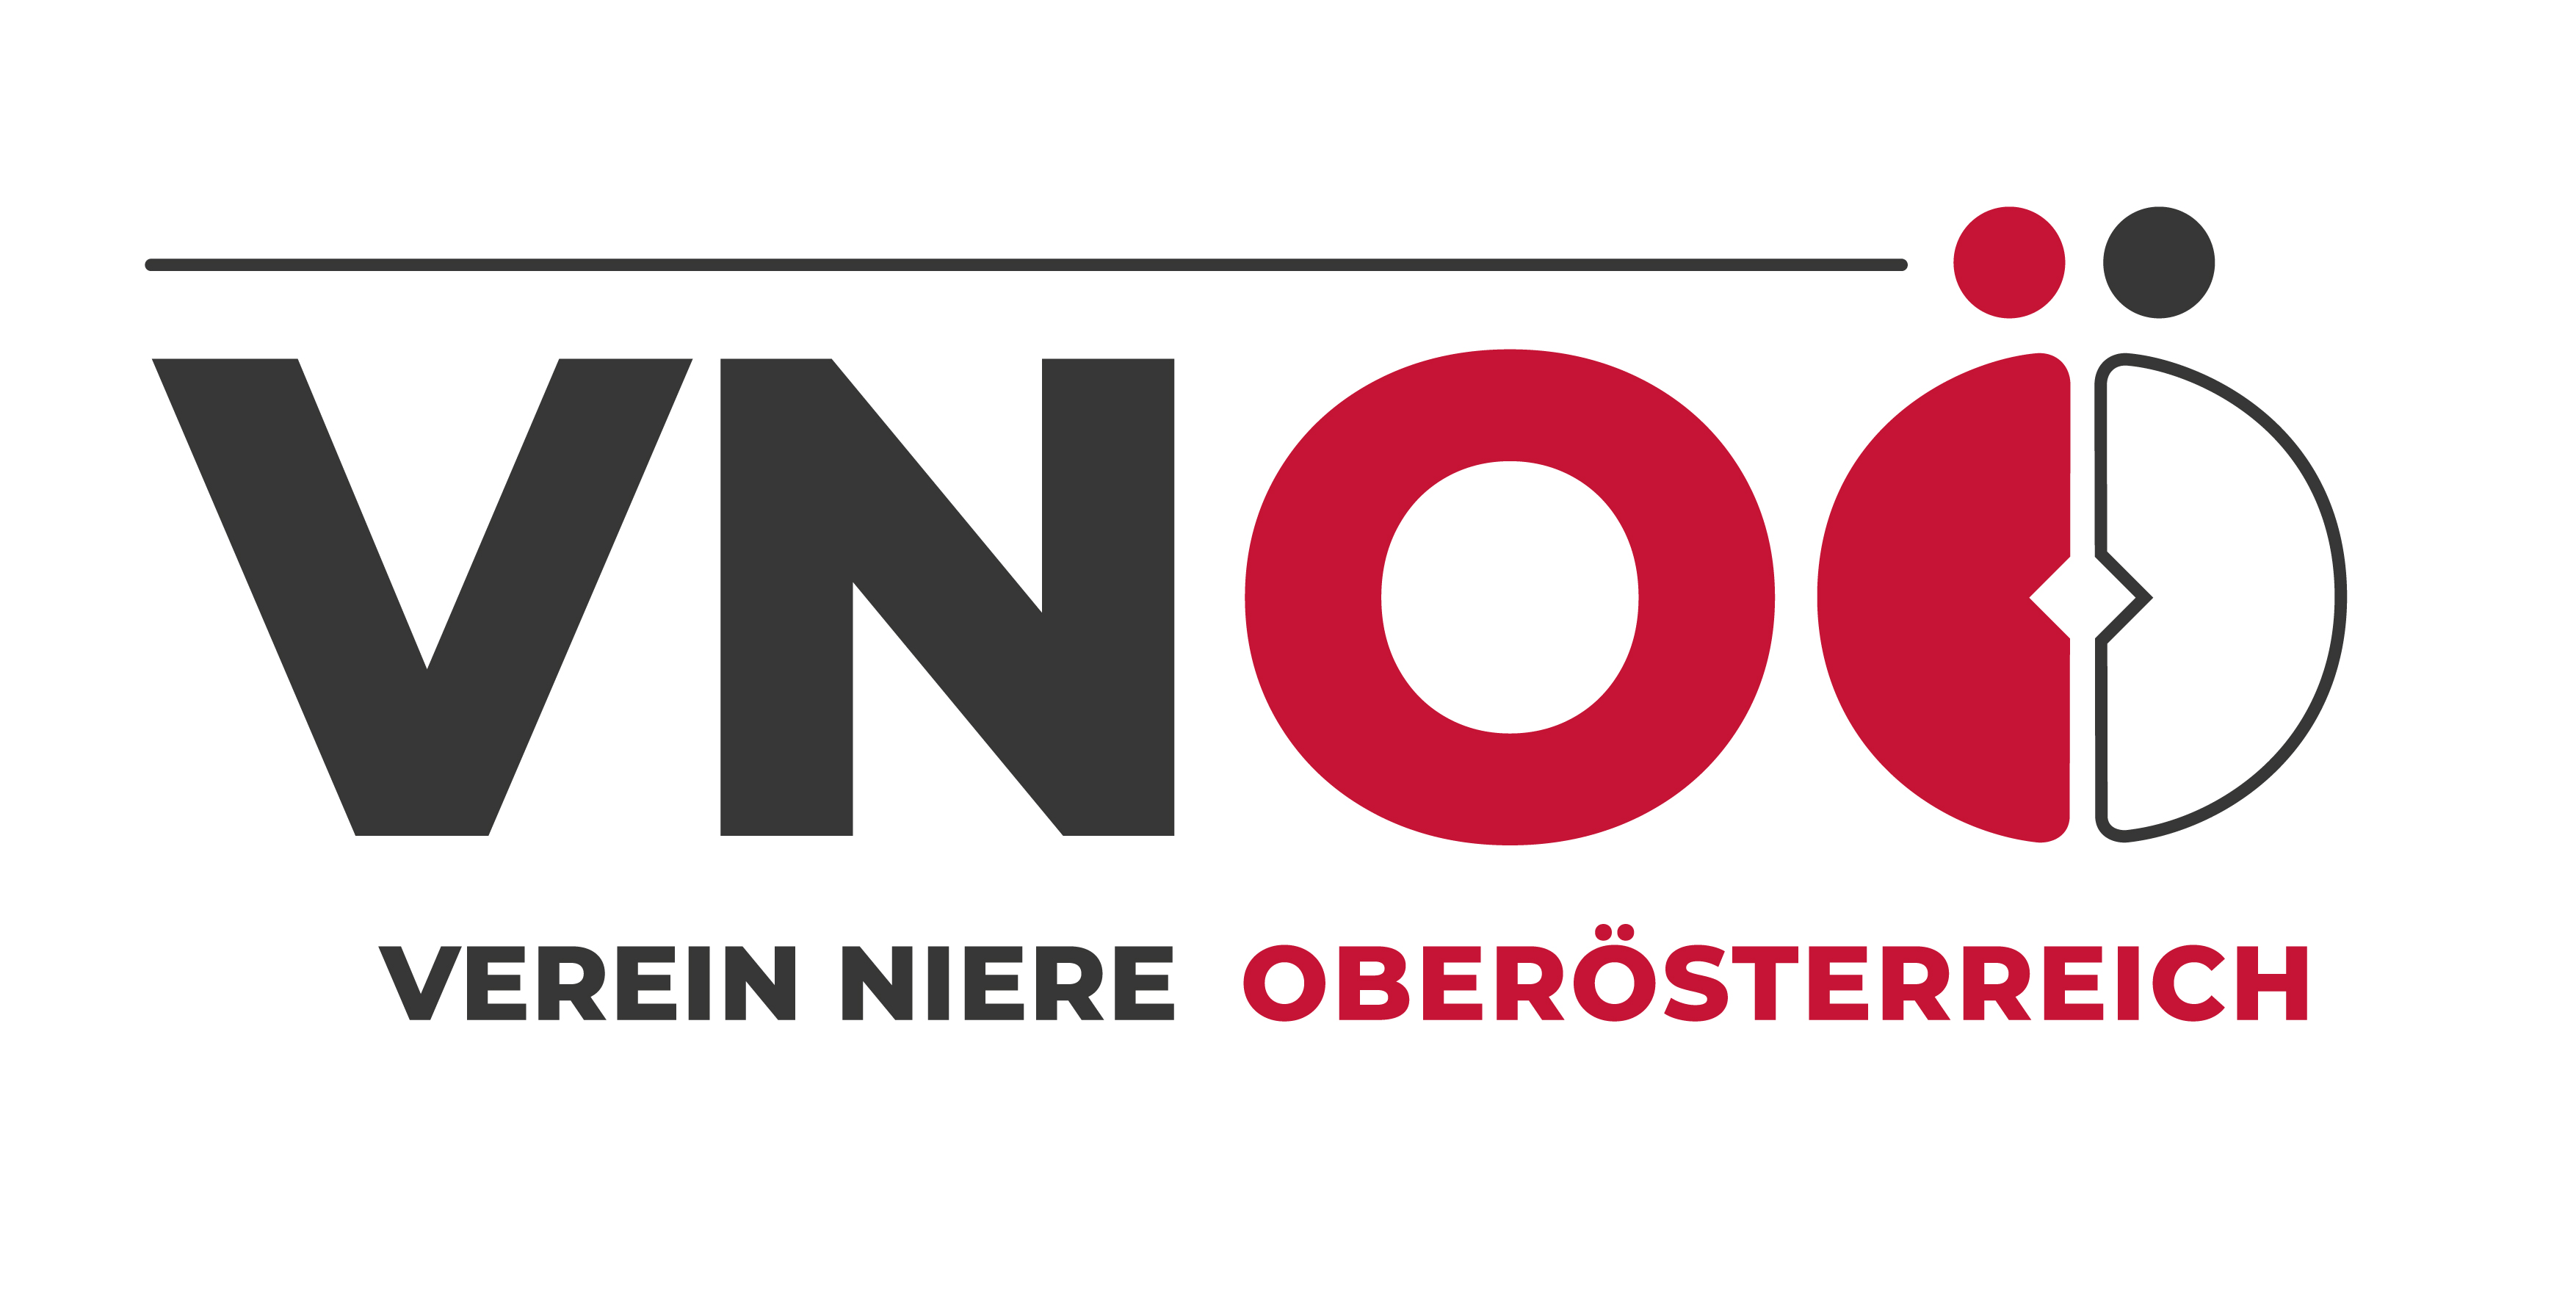 Verein Niere Oberösterreich